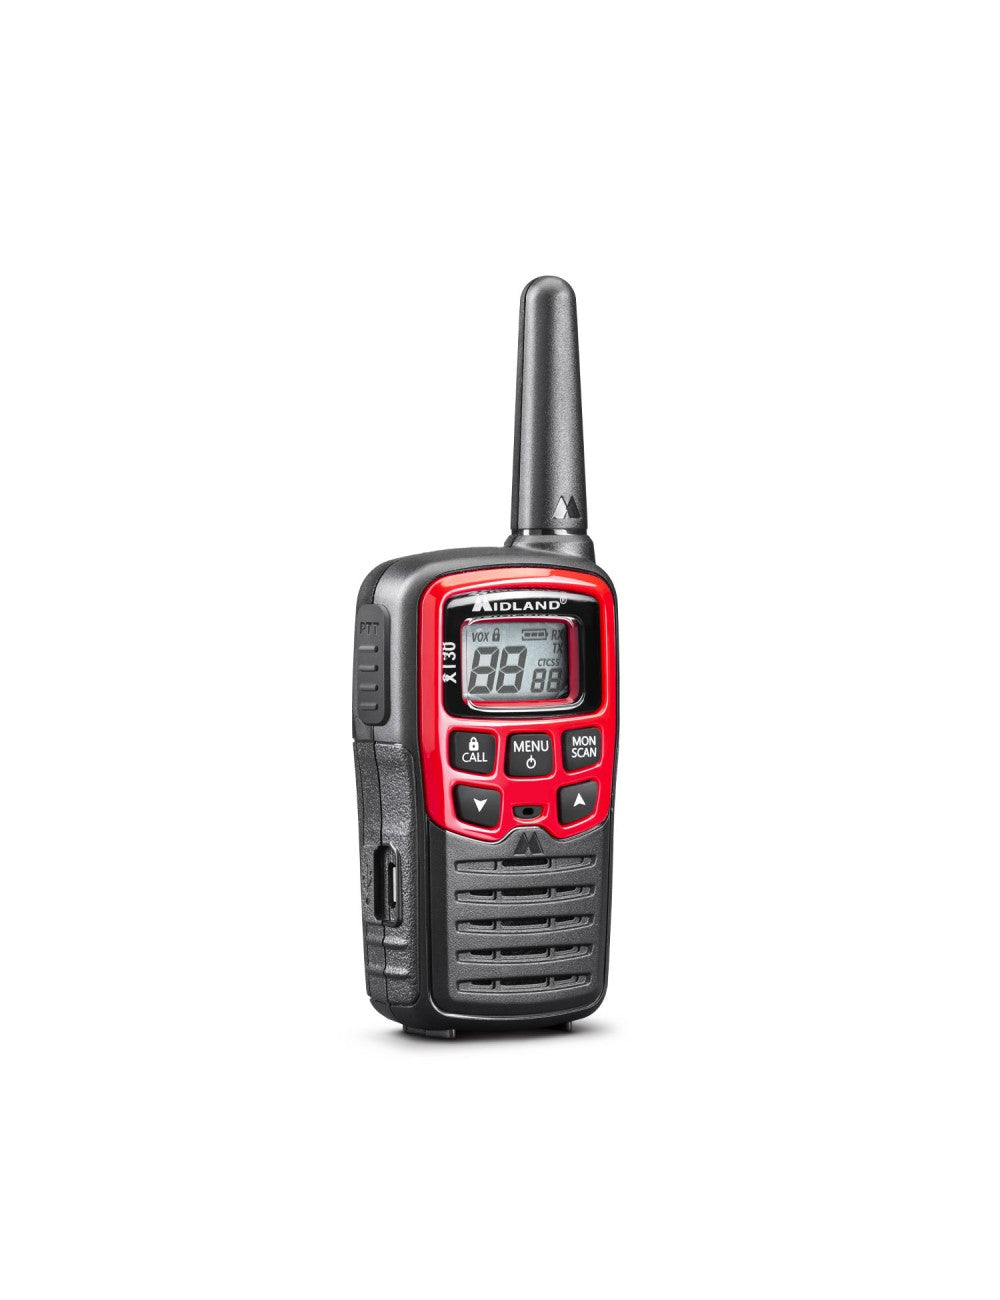 Radio dinamo ER300 con dos walkies y cuatro mantas de emergencia